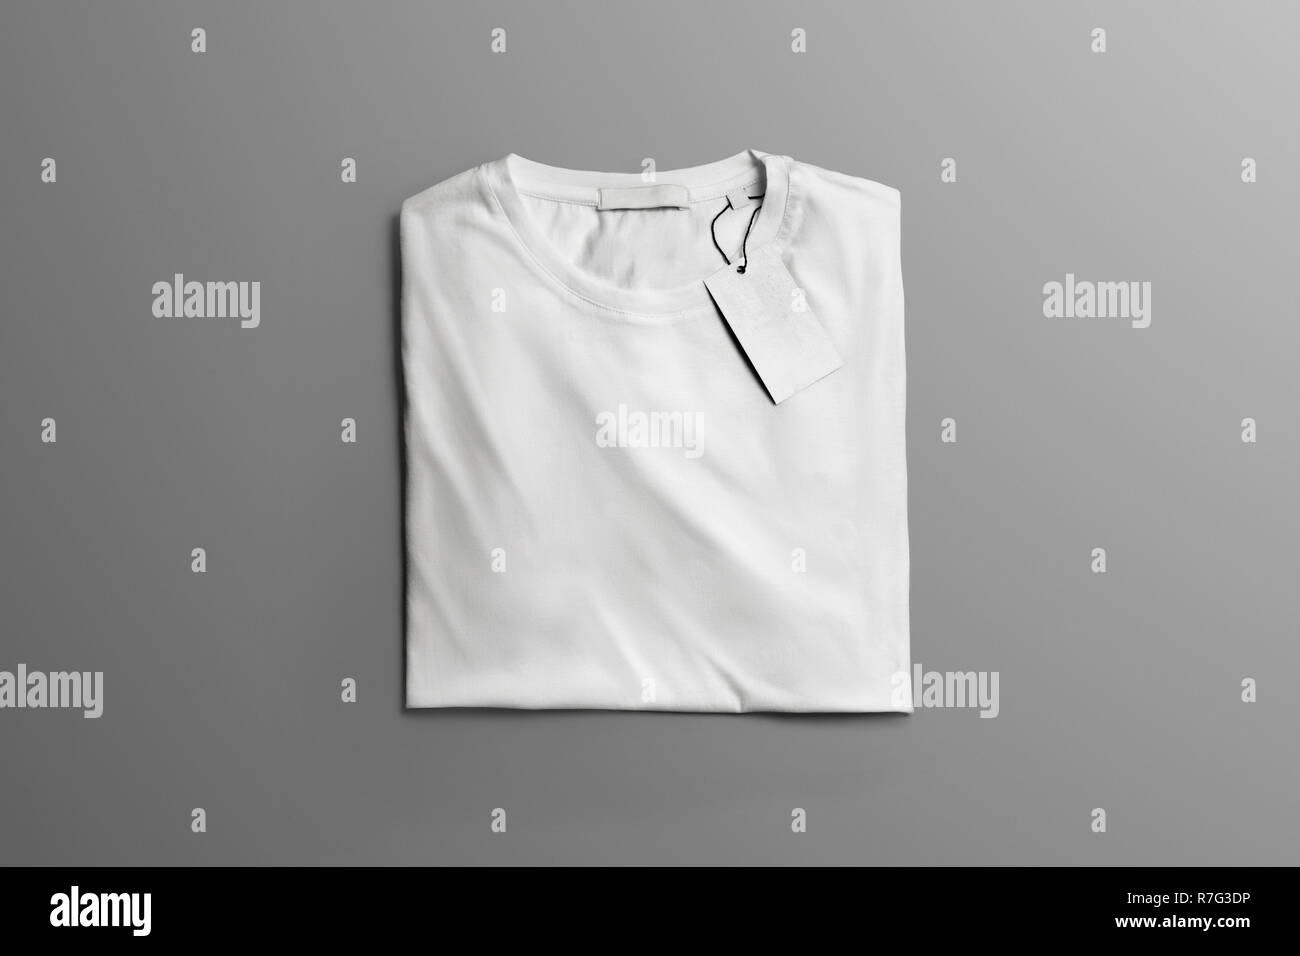 Maqueta de estudio de ropa. Doblado en blanco T-shirt yace en el fondo gris con sombras. Puede utilizar la plantilla para usted Showcase. Foto de stock